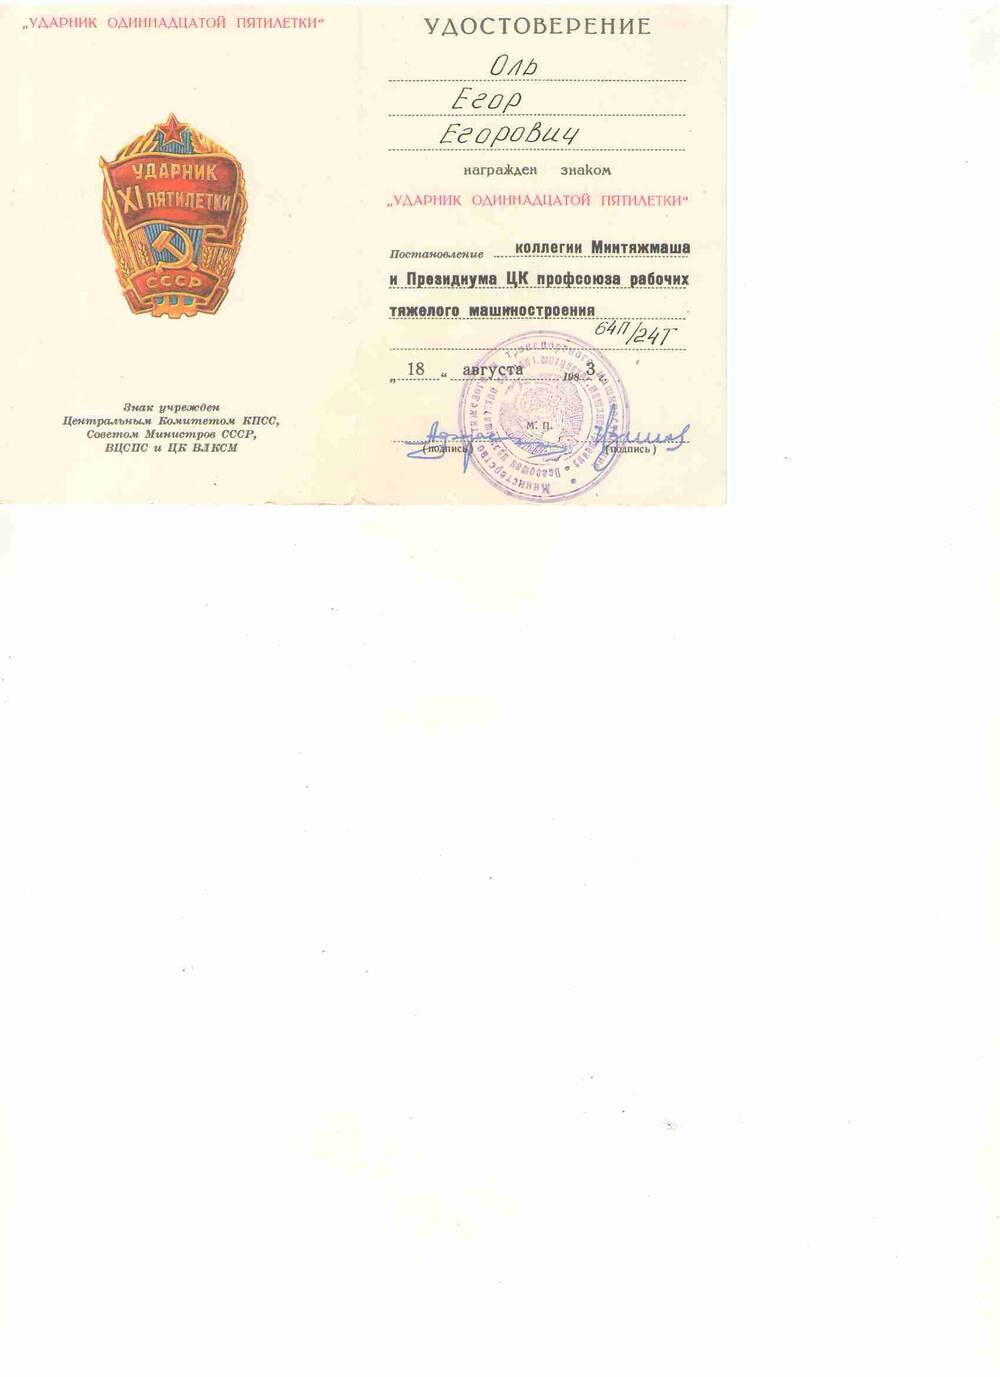 Удостоверение на имя Оля Егора Егоровича о награждении знаком «Ударник одиннадцатой пятилетки». 1983 г.